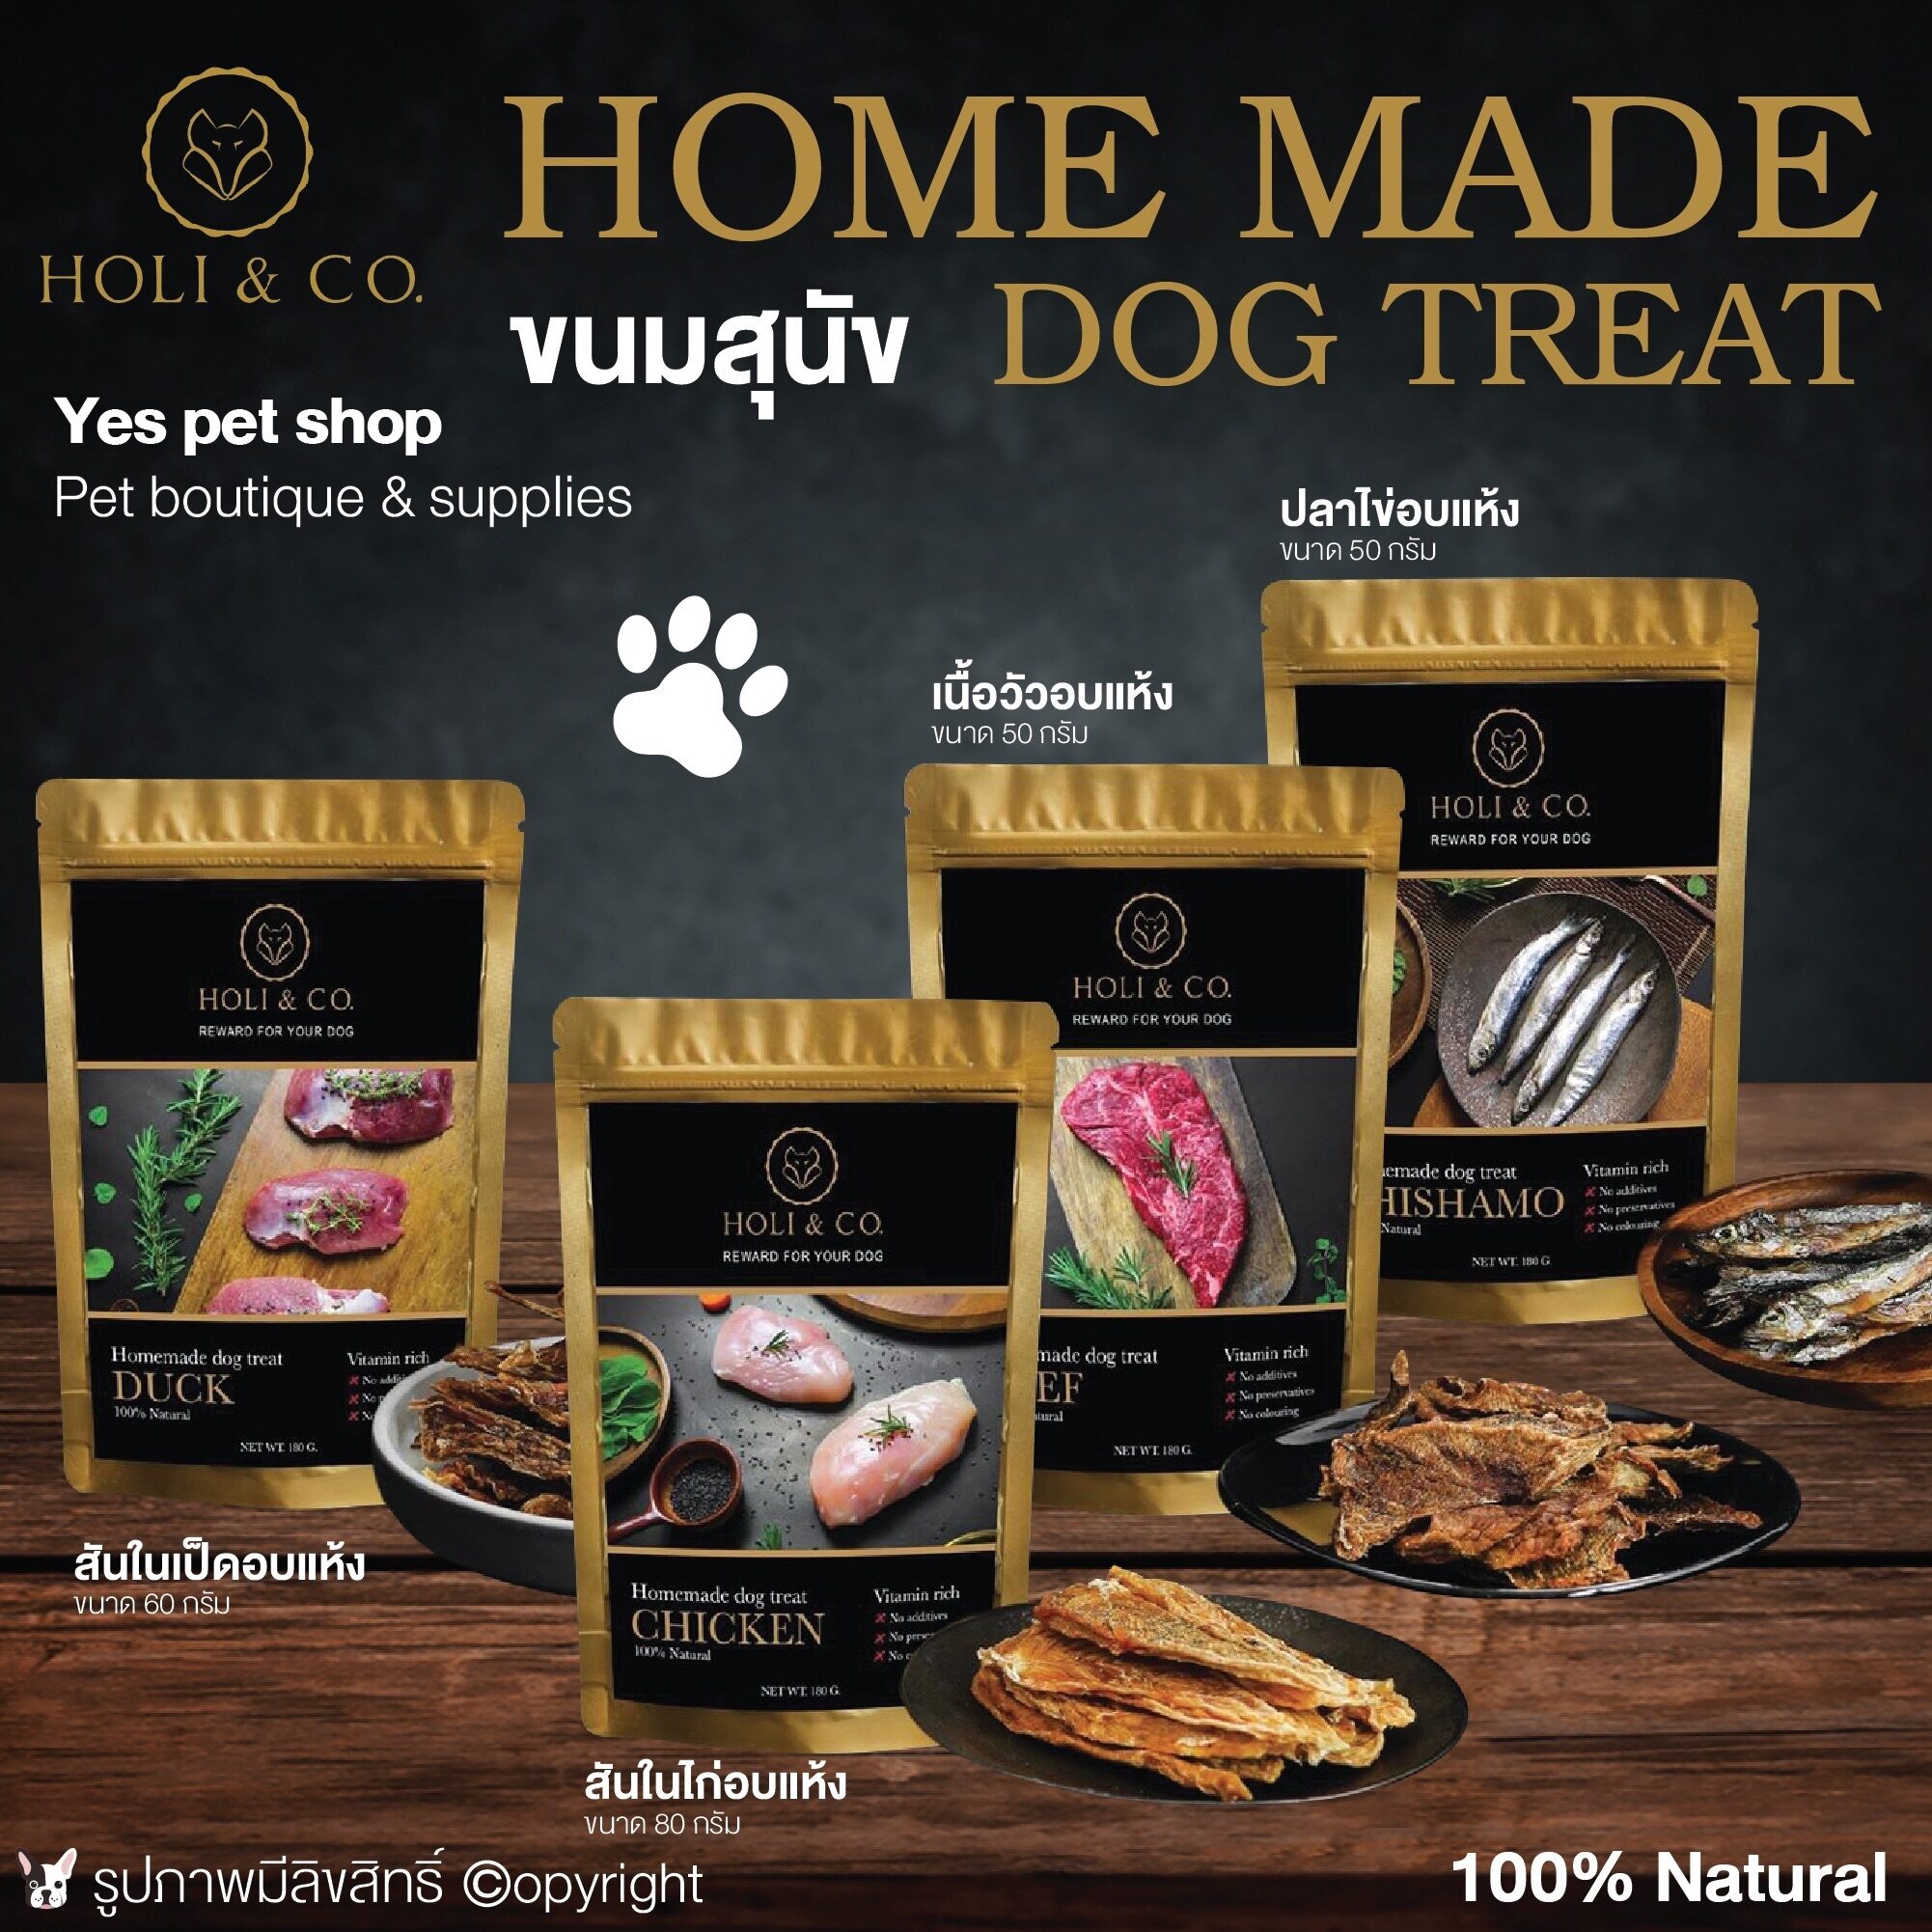 ขนมสุนัข Holi & Co. Home Made Dog Treat 100% Natural (แบบตัวเลือก) โดย Yes Pet Shop